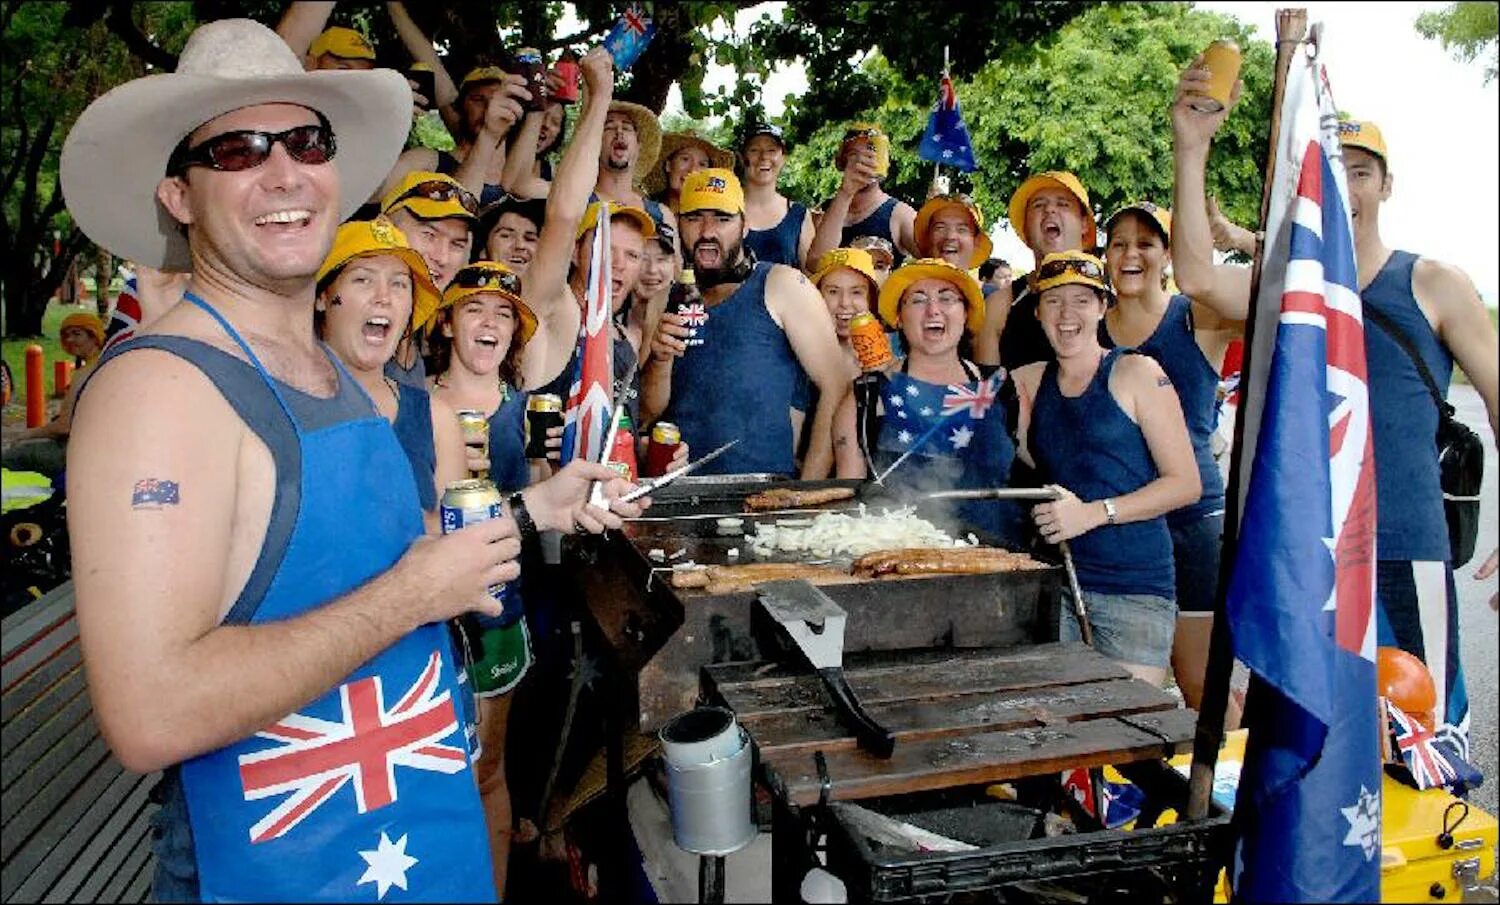 1 группа туристов из австралии. Австралия люди. Дружелюбные австралийцы. Барбекю в Австралии. Австралийцы на барбекю в новый год.